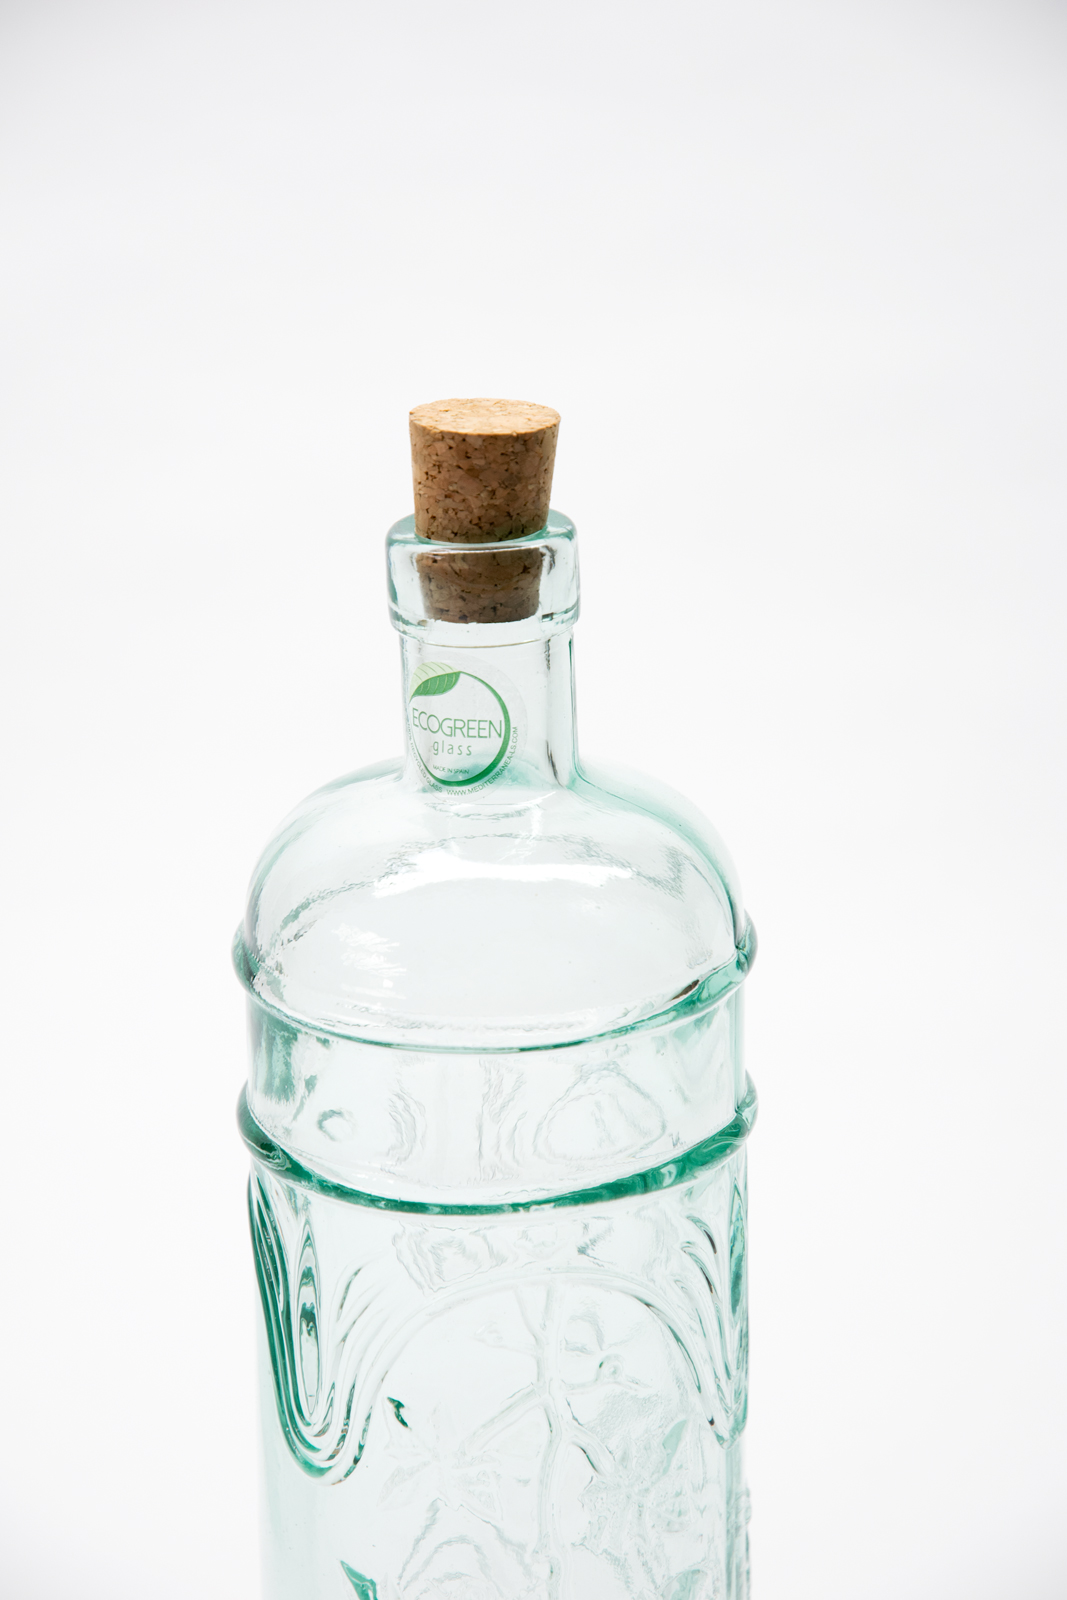 Ecogreen Flasche 1L mit Kork Verschluss Decor Wein